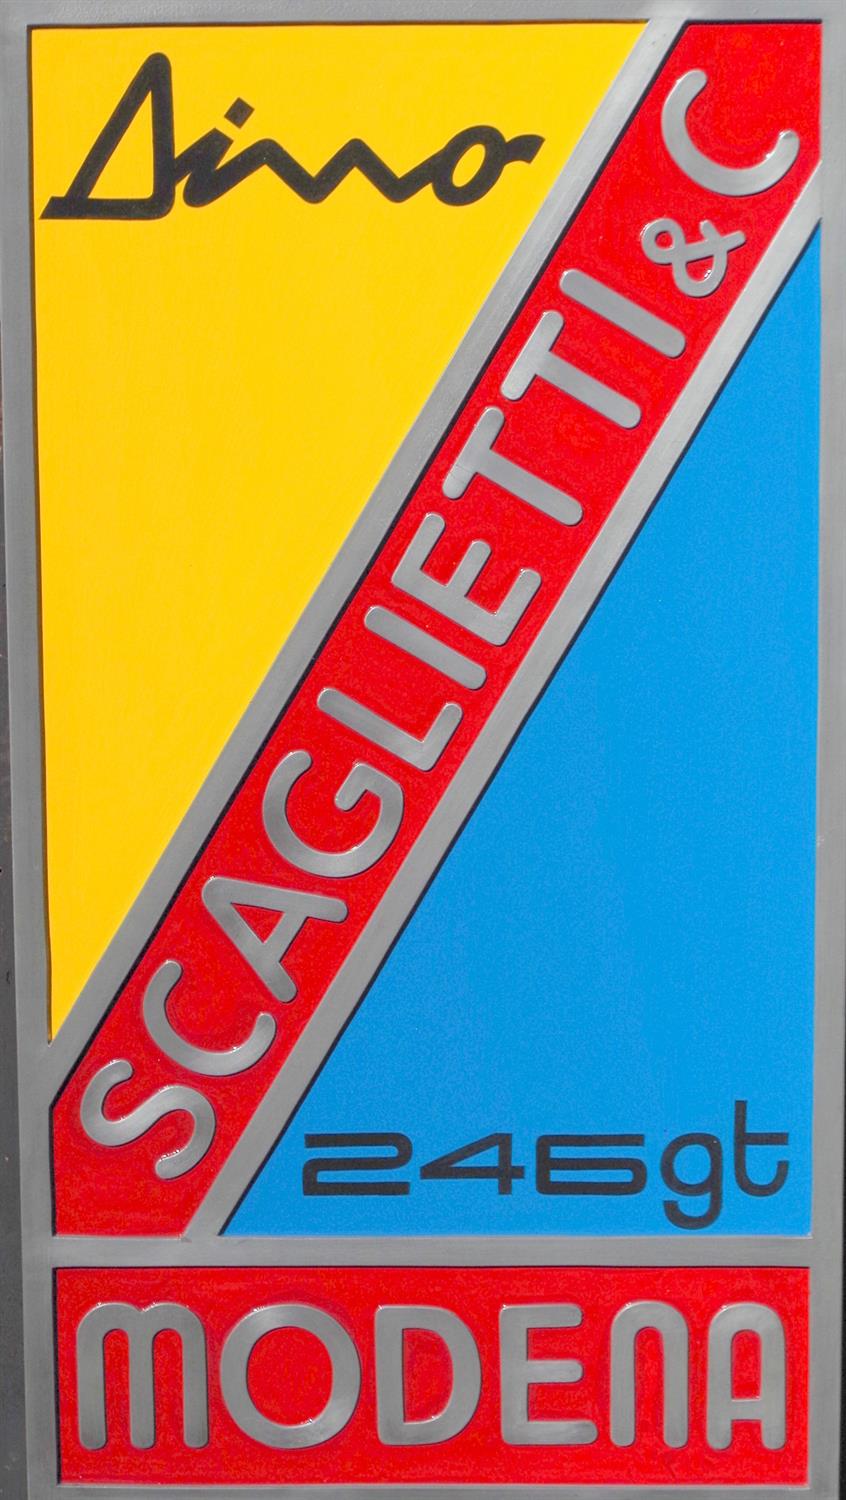 Contemporary "Scaglietti & Co.Modena" Wall Sign